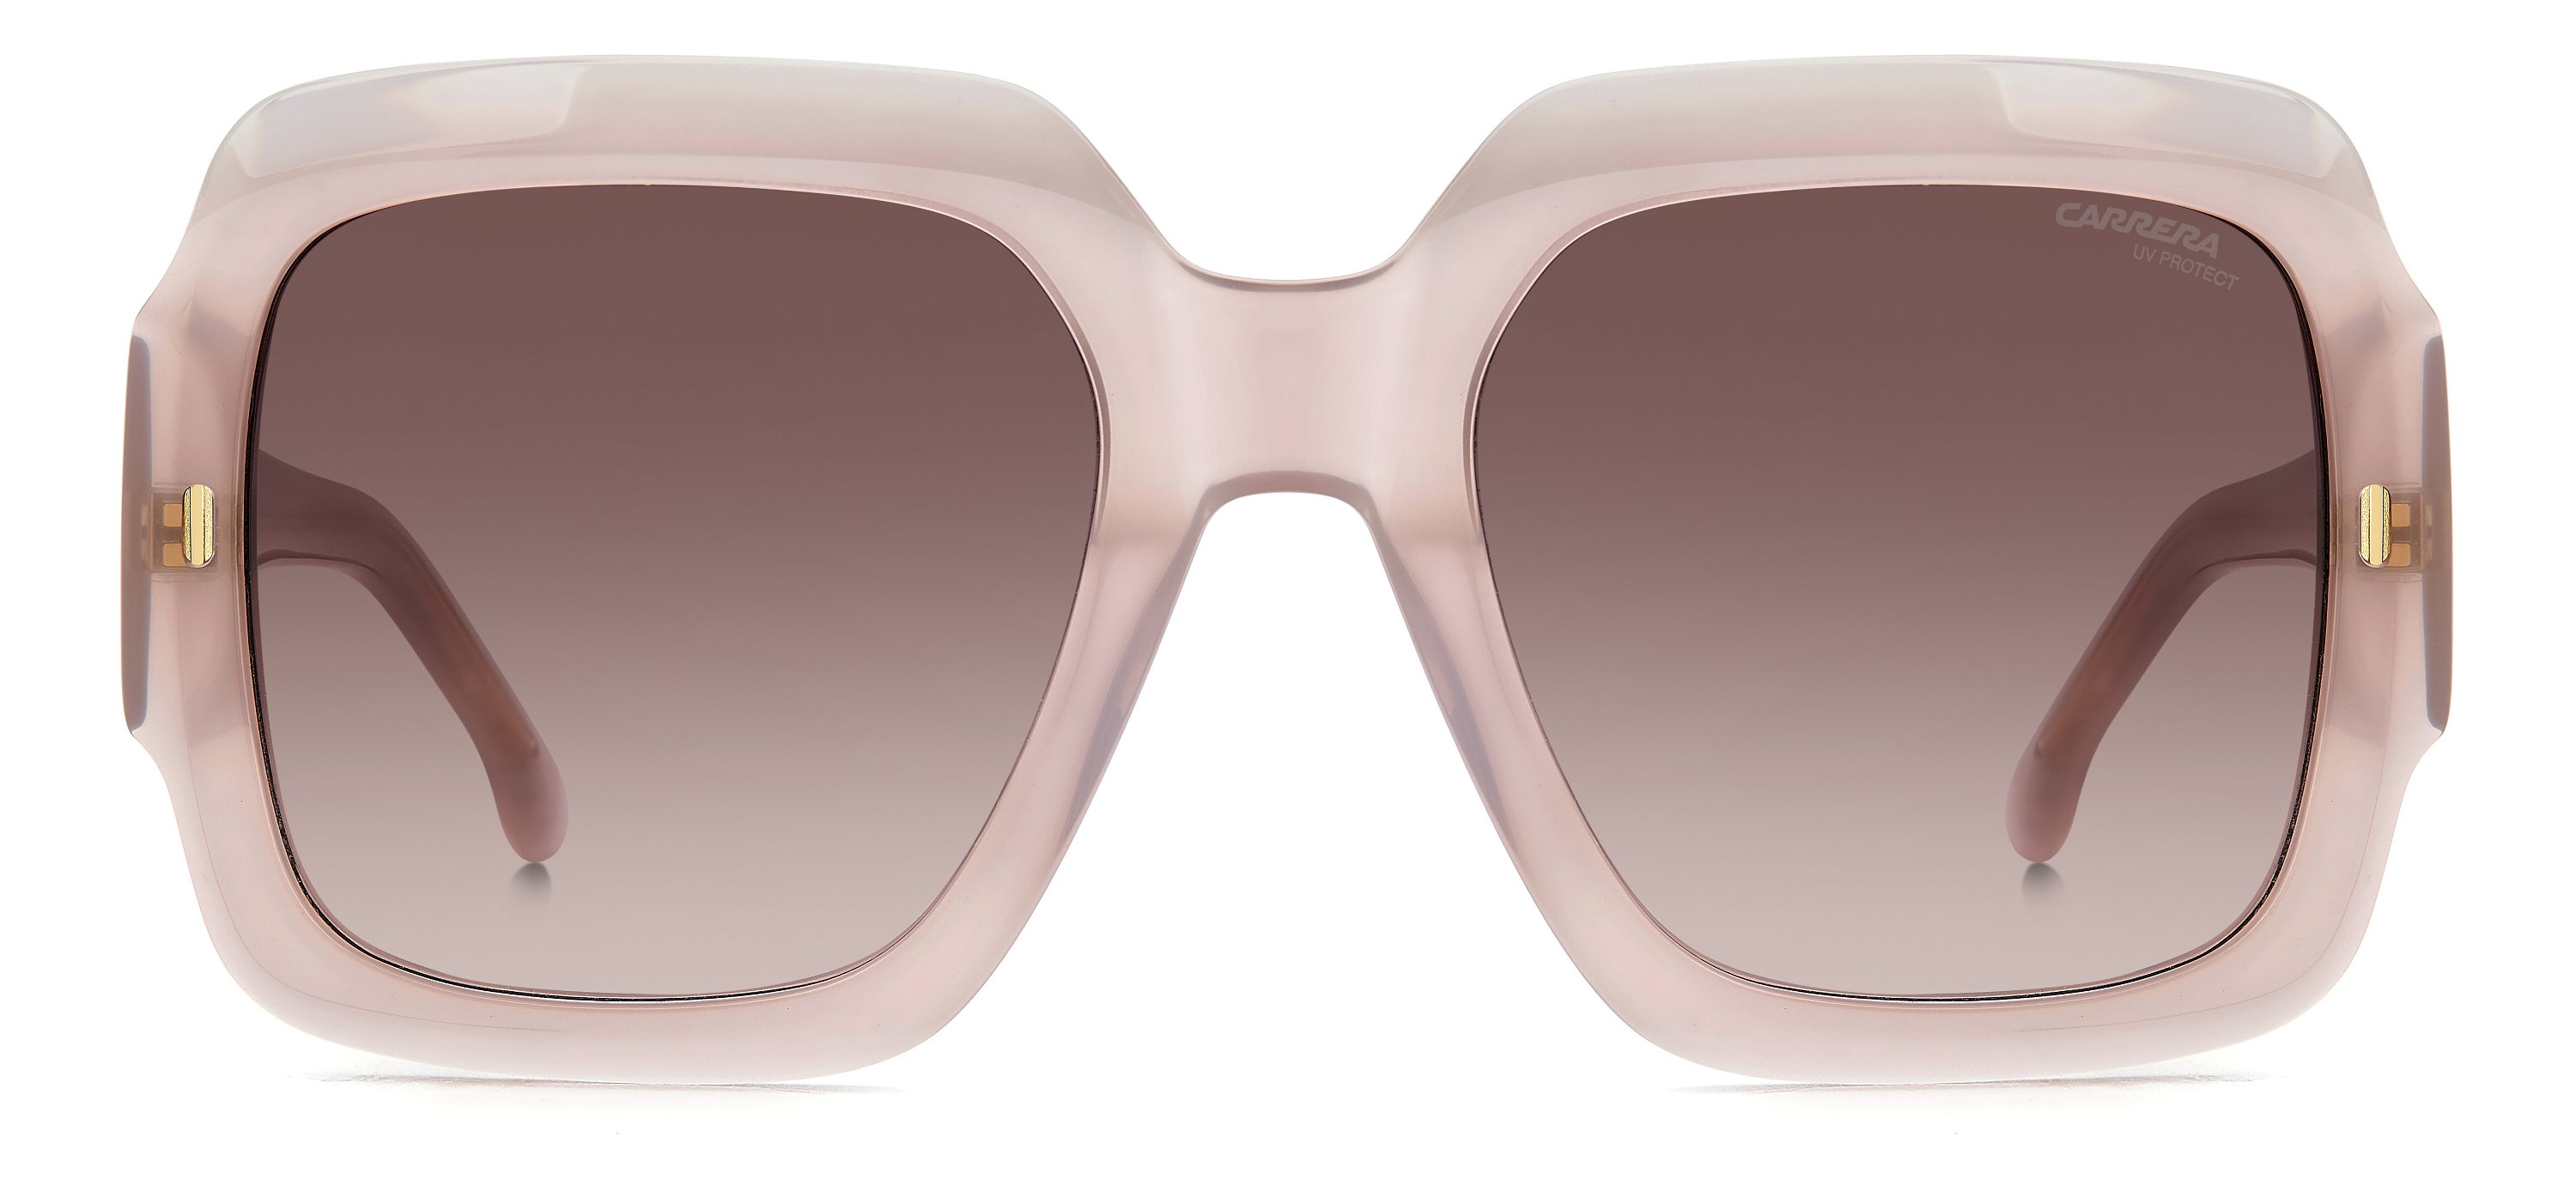 Das Bild zeigt die Sonnenbrille 3004_S von der Marke Carrera in nude.